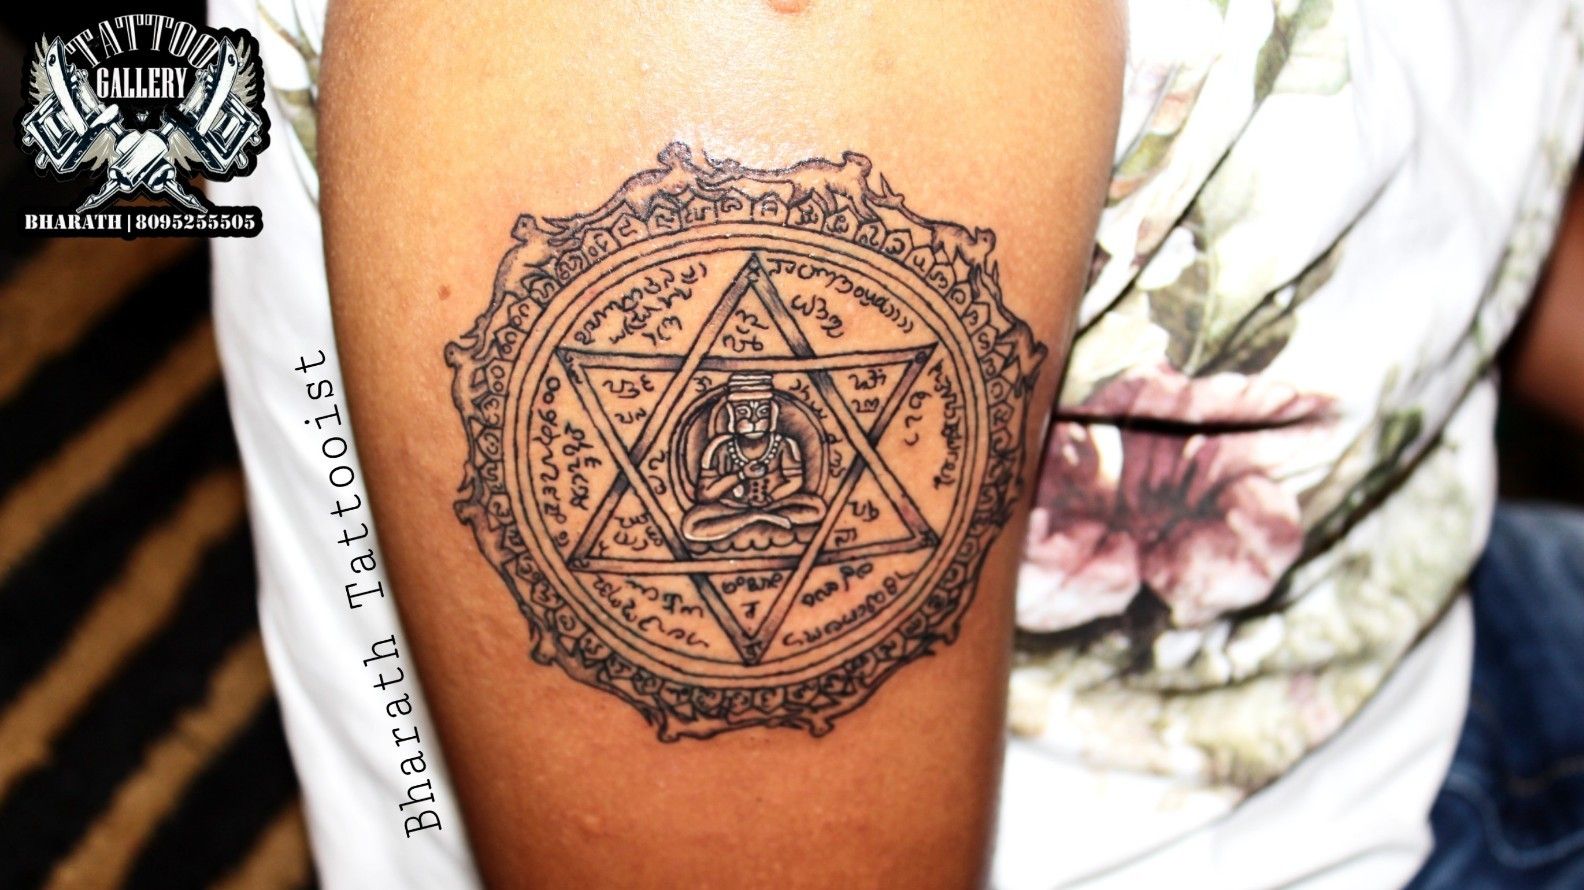 Tattoo uploaded by BHARATH TATTOOIST • 